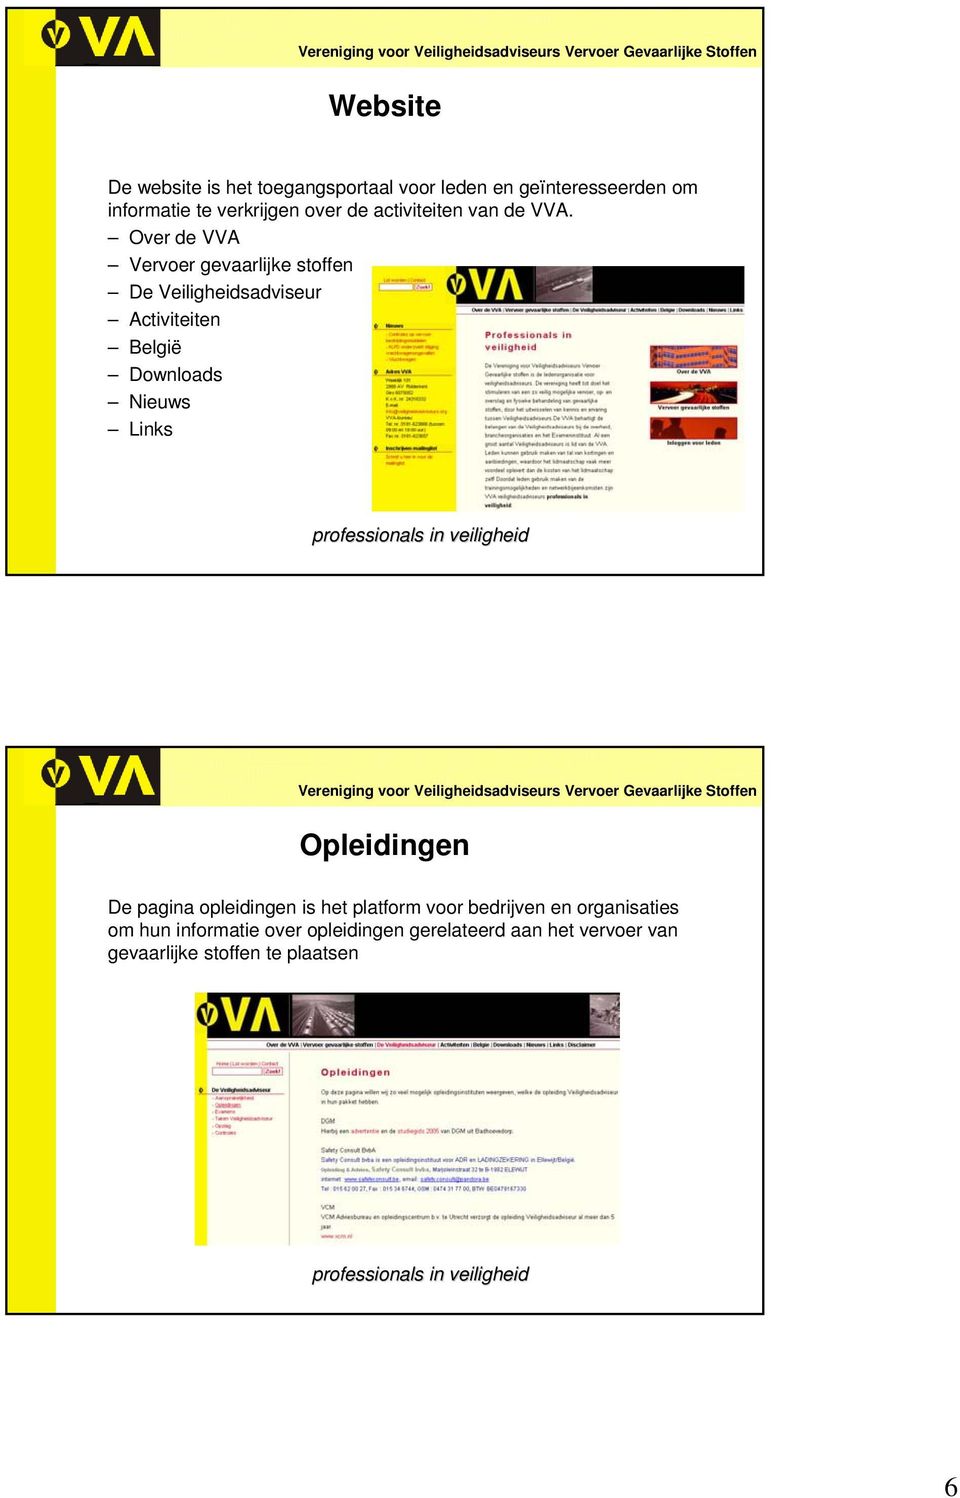 Over de VVA Vervoer gevaarlijke stoffen De Veiligheidsadviseur Activiteiten België Downloads Nieuws Links